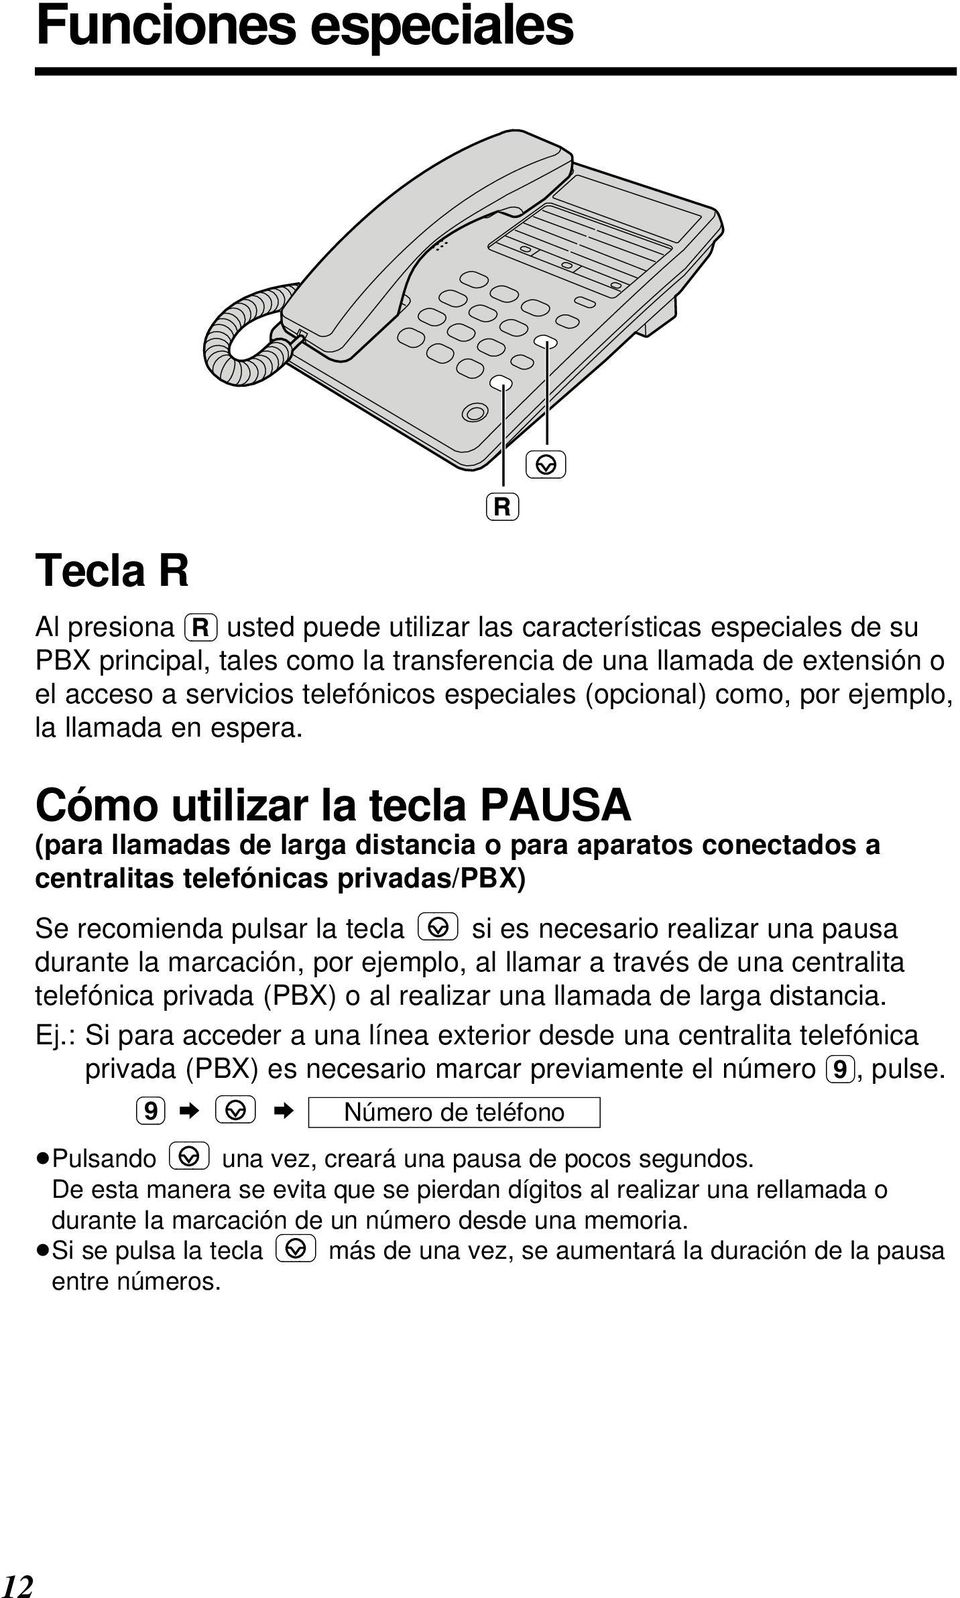 Cómo utilizar la tecla PAUSA (para llamadas de larga distancia o para aparatos conectados a centralitas telefónicas privadas/pbx) Se recomienda pulsar la tecla si es necesario realizar una pausa